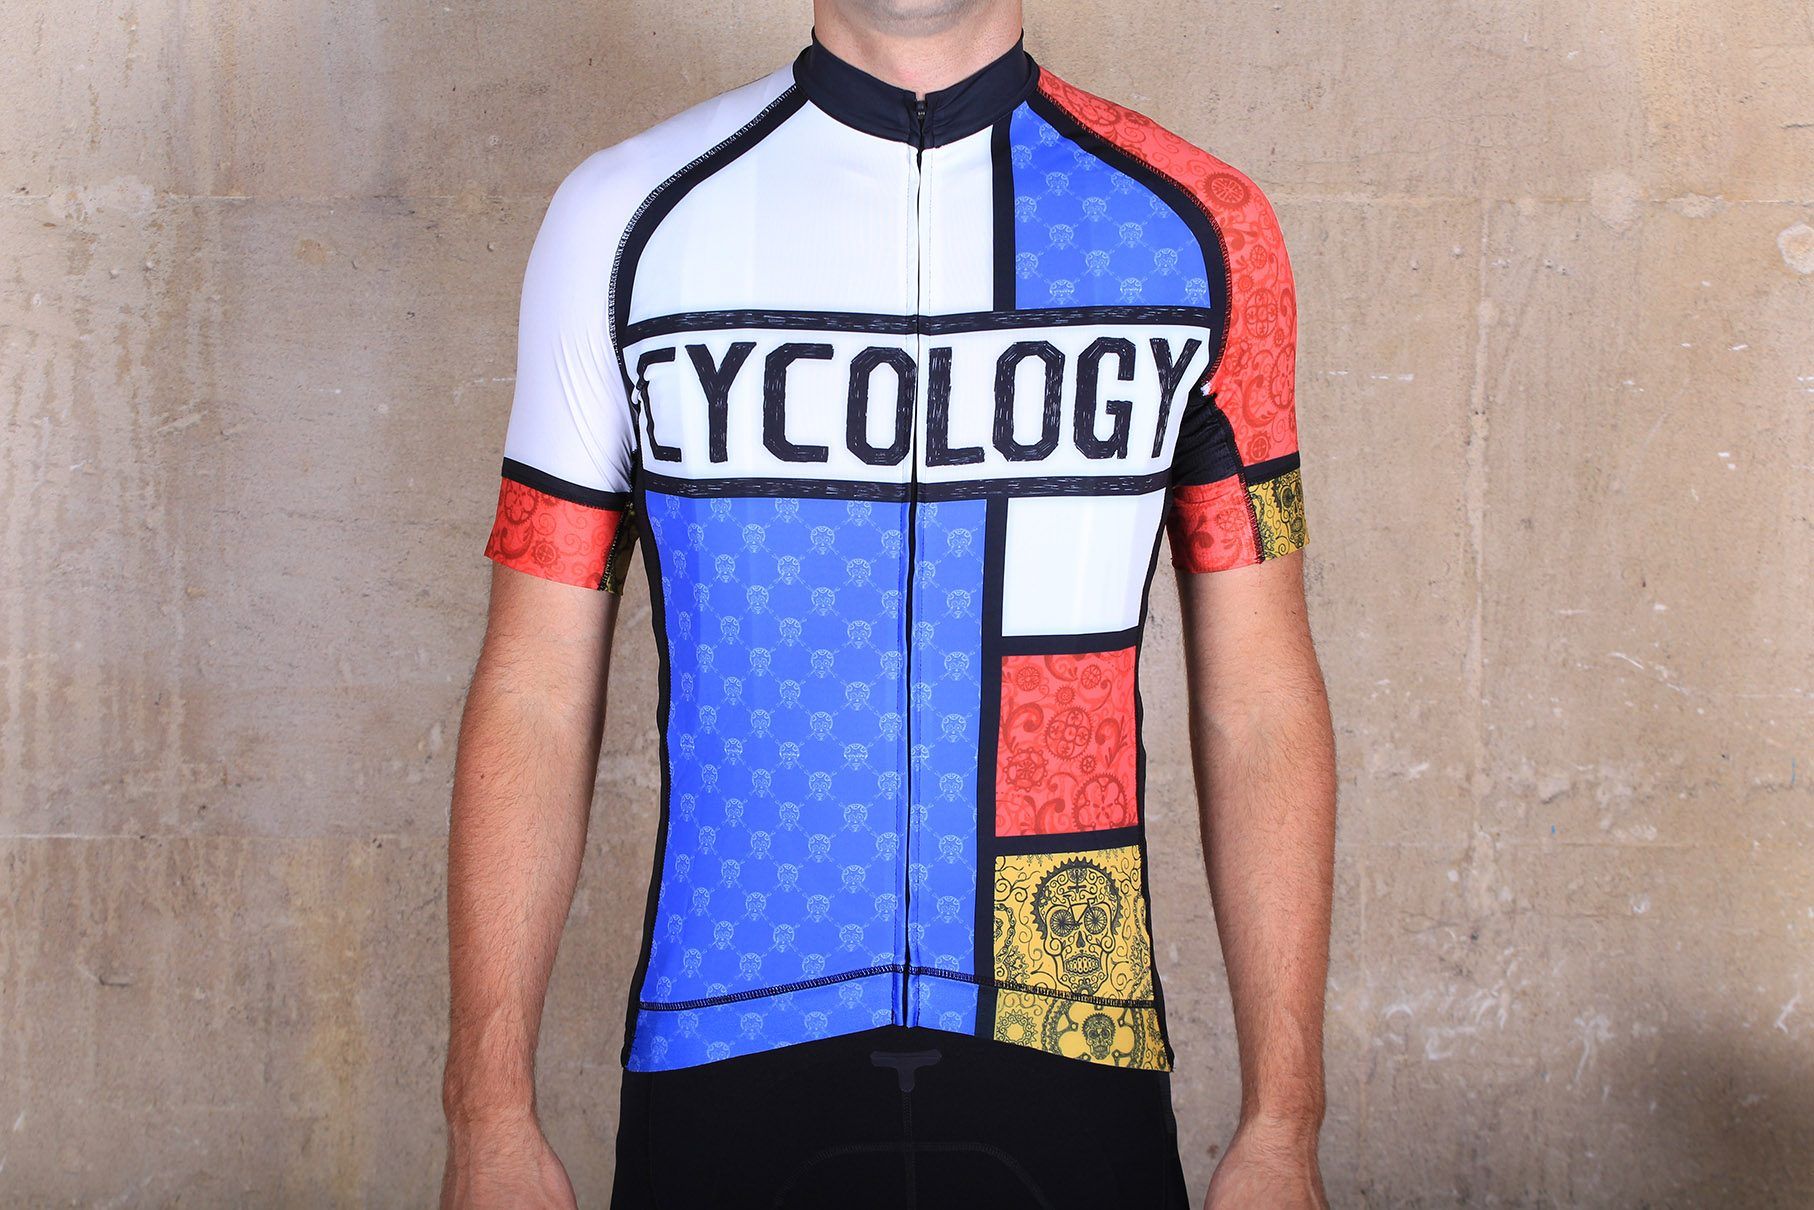 cycology cycling jersey